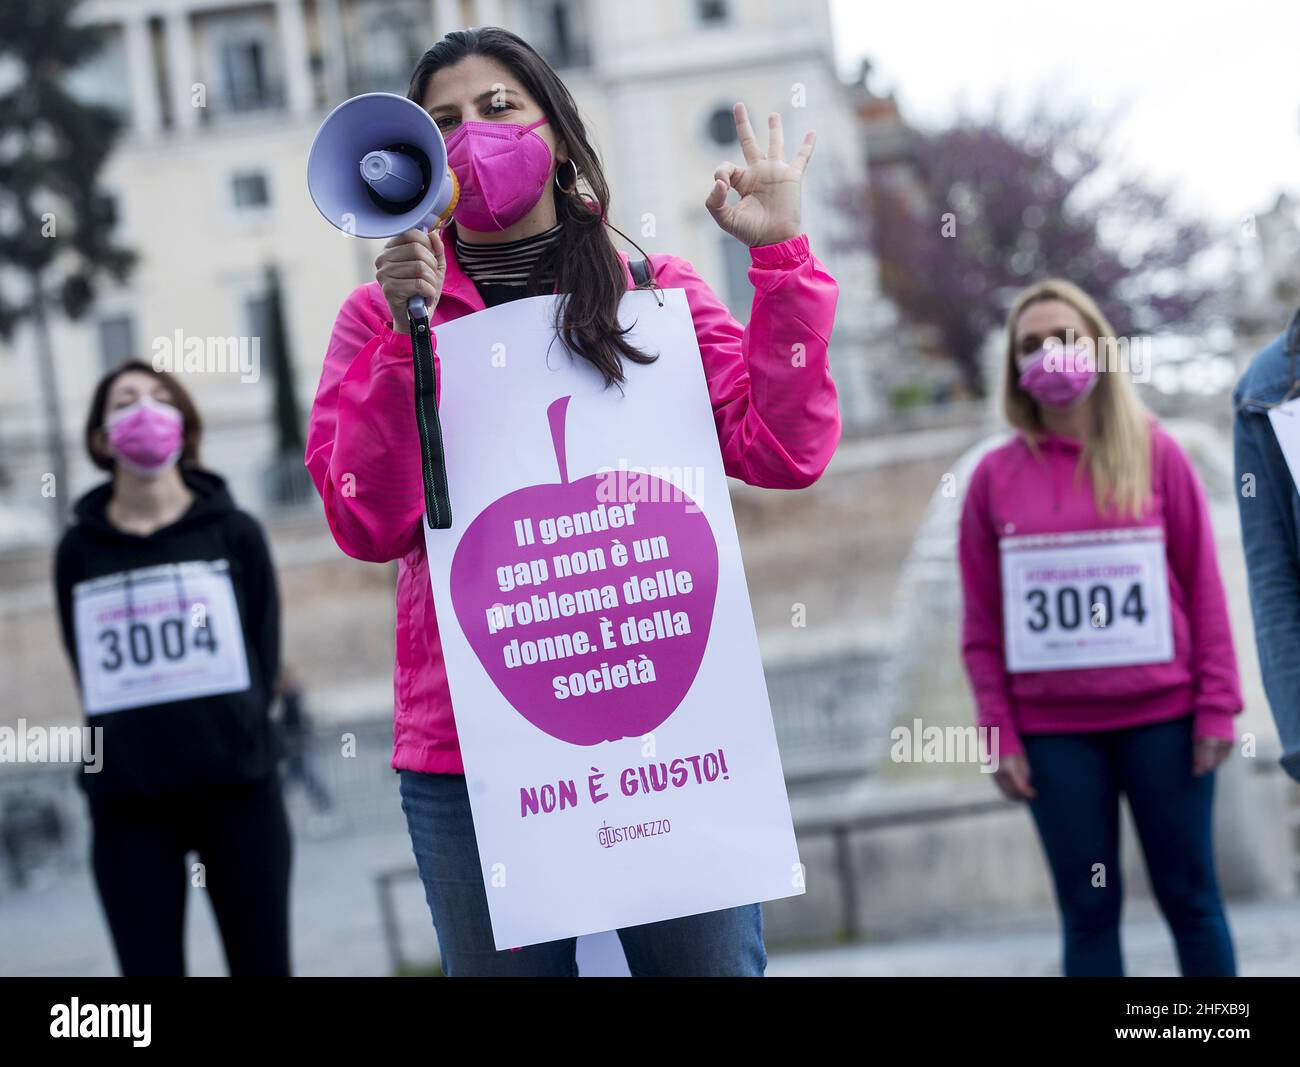 Roberto Monaldo / LaPresse 18-04-2021 Rom (Italien) #CorsaAlRecovery - Flash Mob gegen Geschlechterungleichheit im Bild Ein Moment des Flash Mob Stockfoto